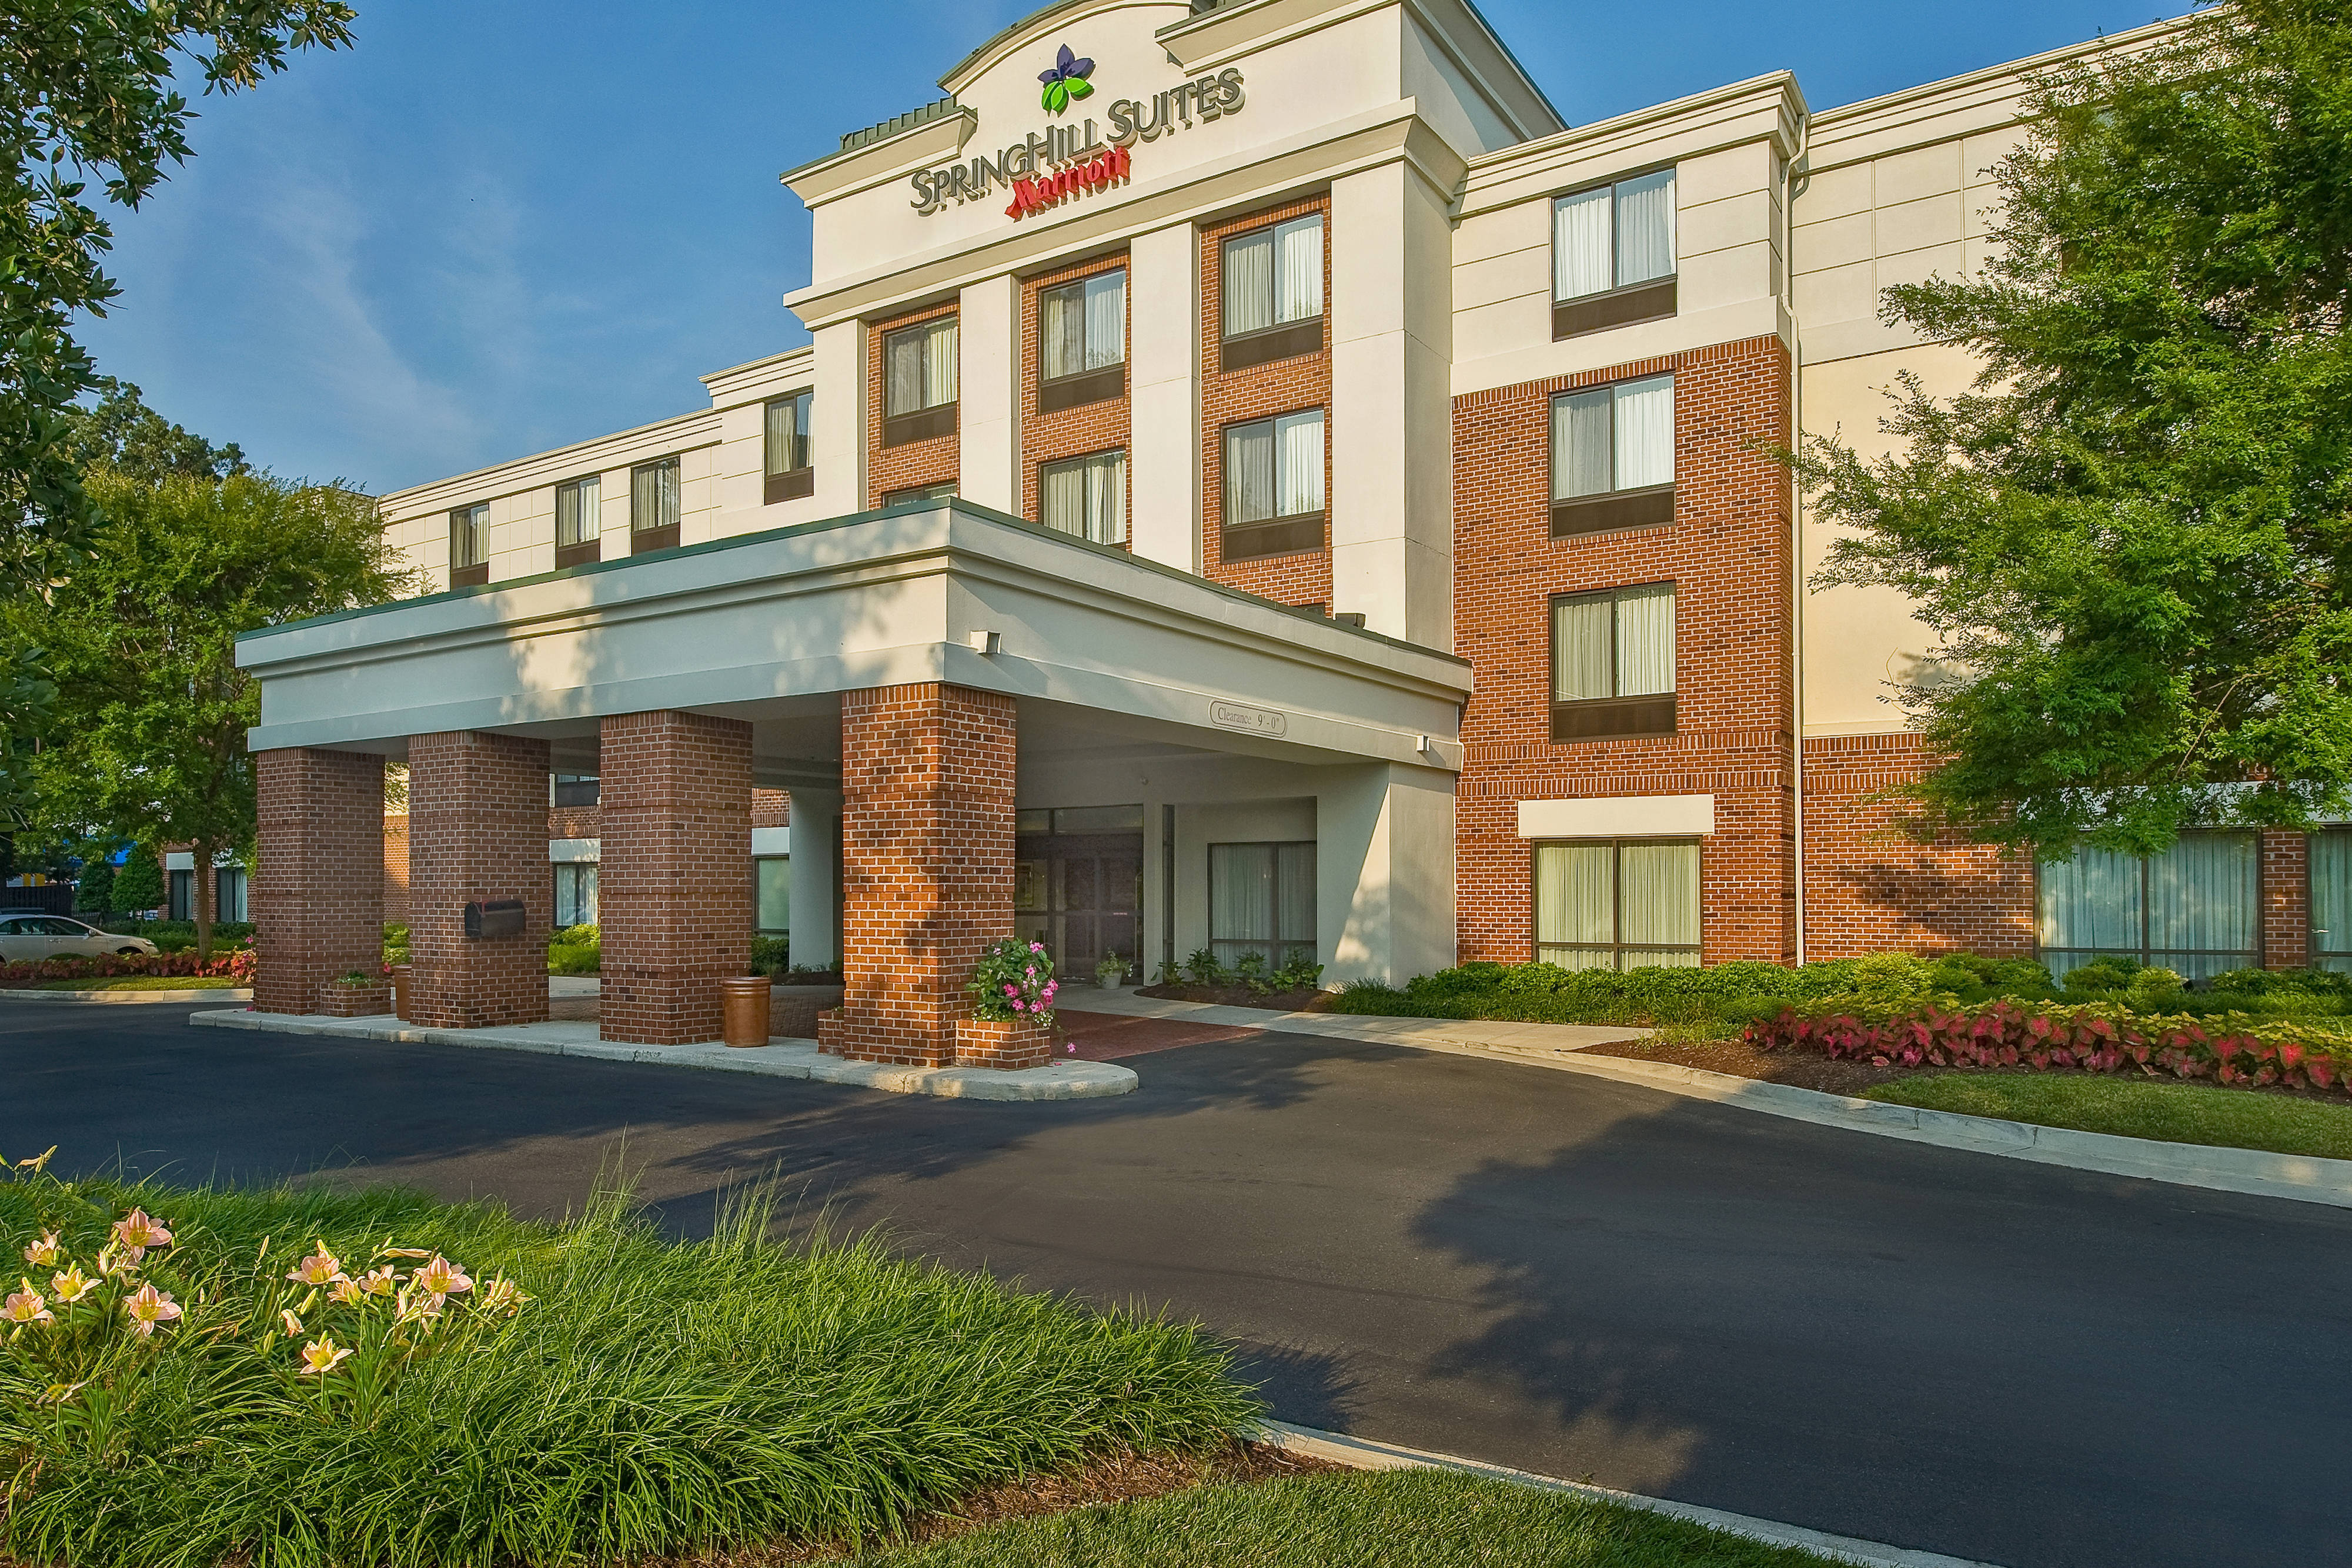 Photo of SpringHill Suites Richmond North/Glen Allen, Glen Allen, VA